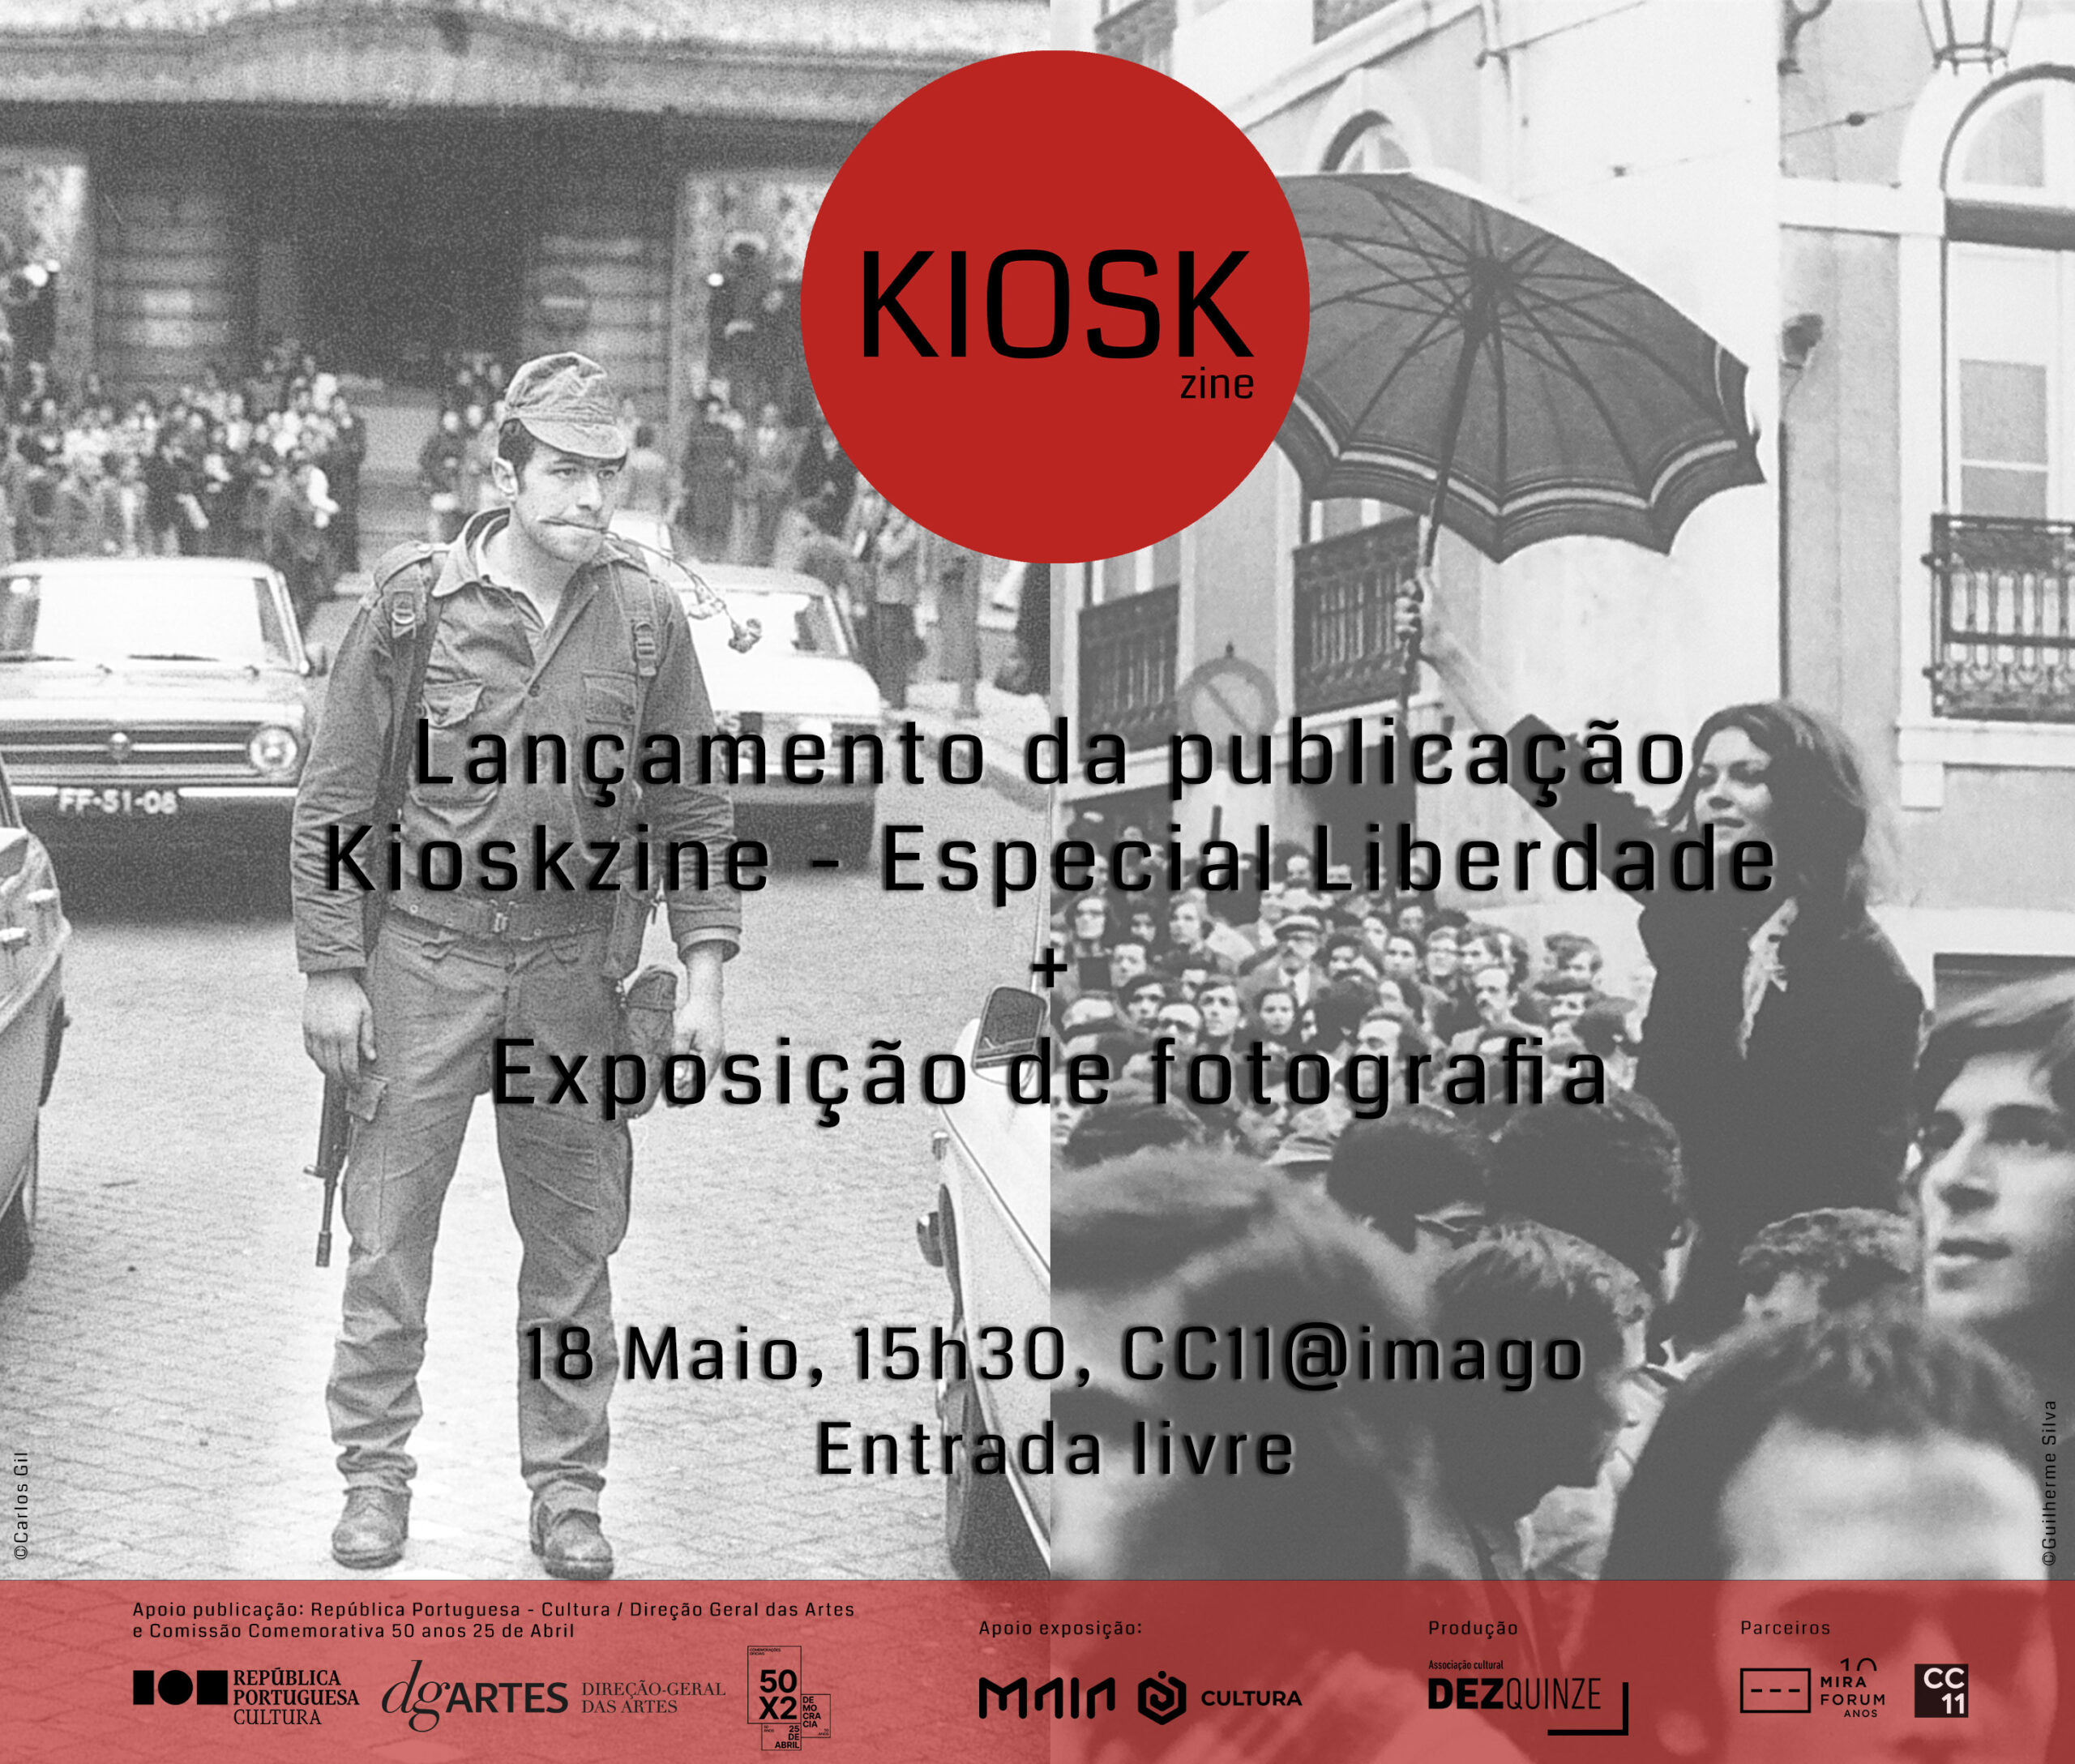 Capa Oficial do Evento Lançamento da publicação e exposição fotográfica da Kioskzine - Especial Liberdade - Lisboa